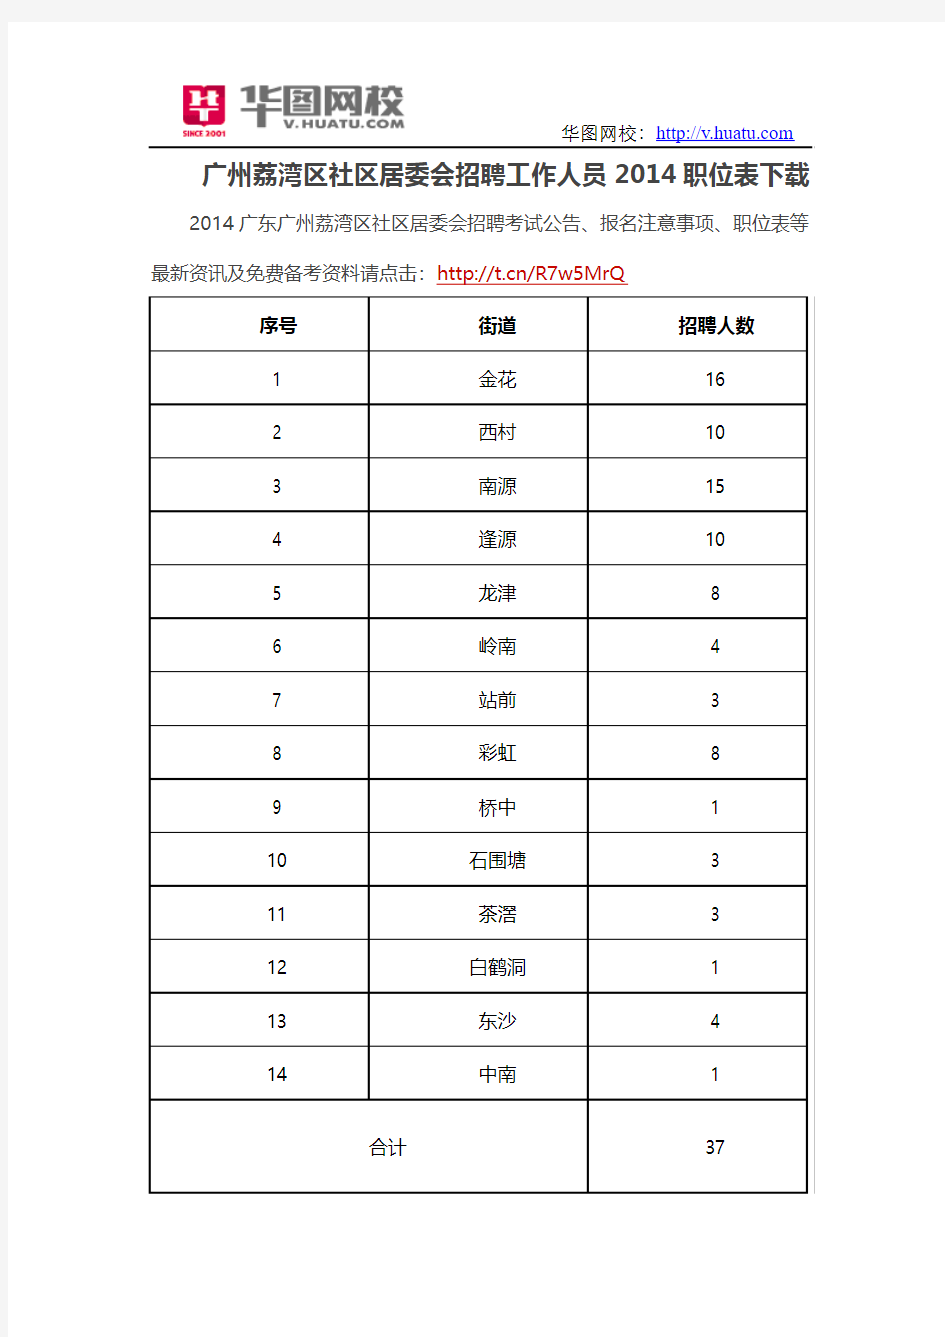 广州荔湾区社区居委会招聘工作人员2014职位表下载